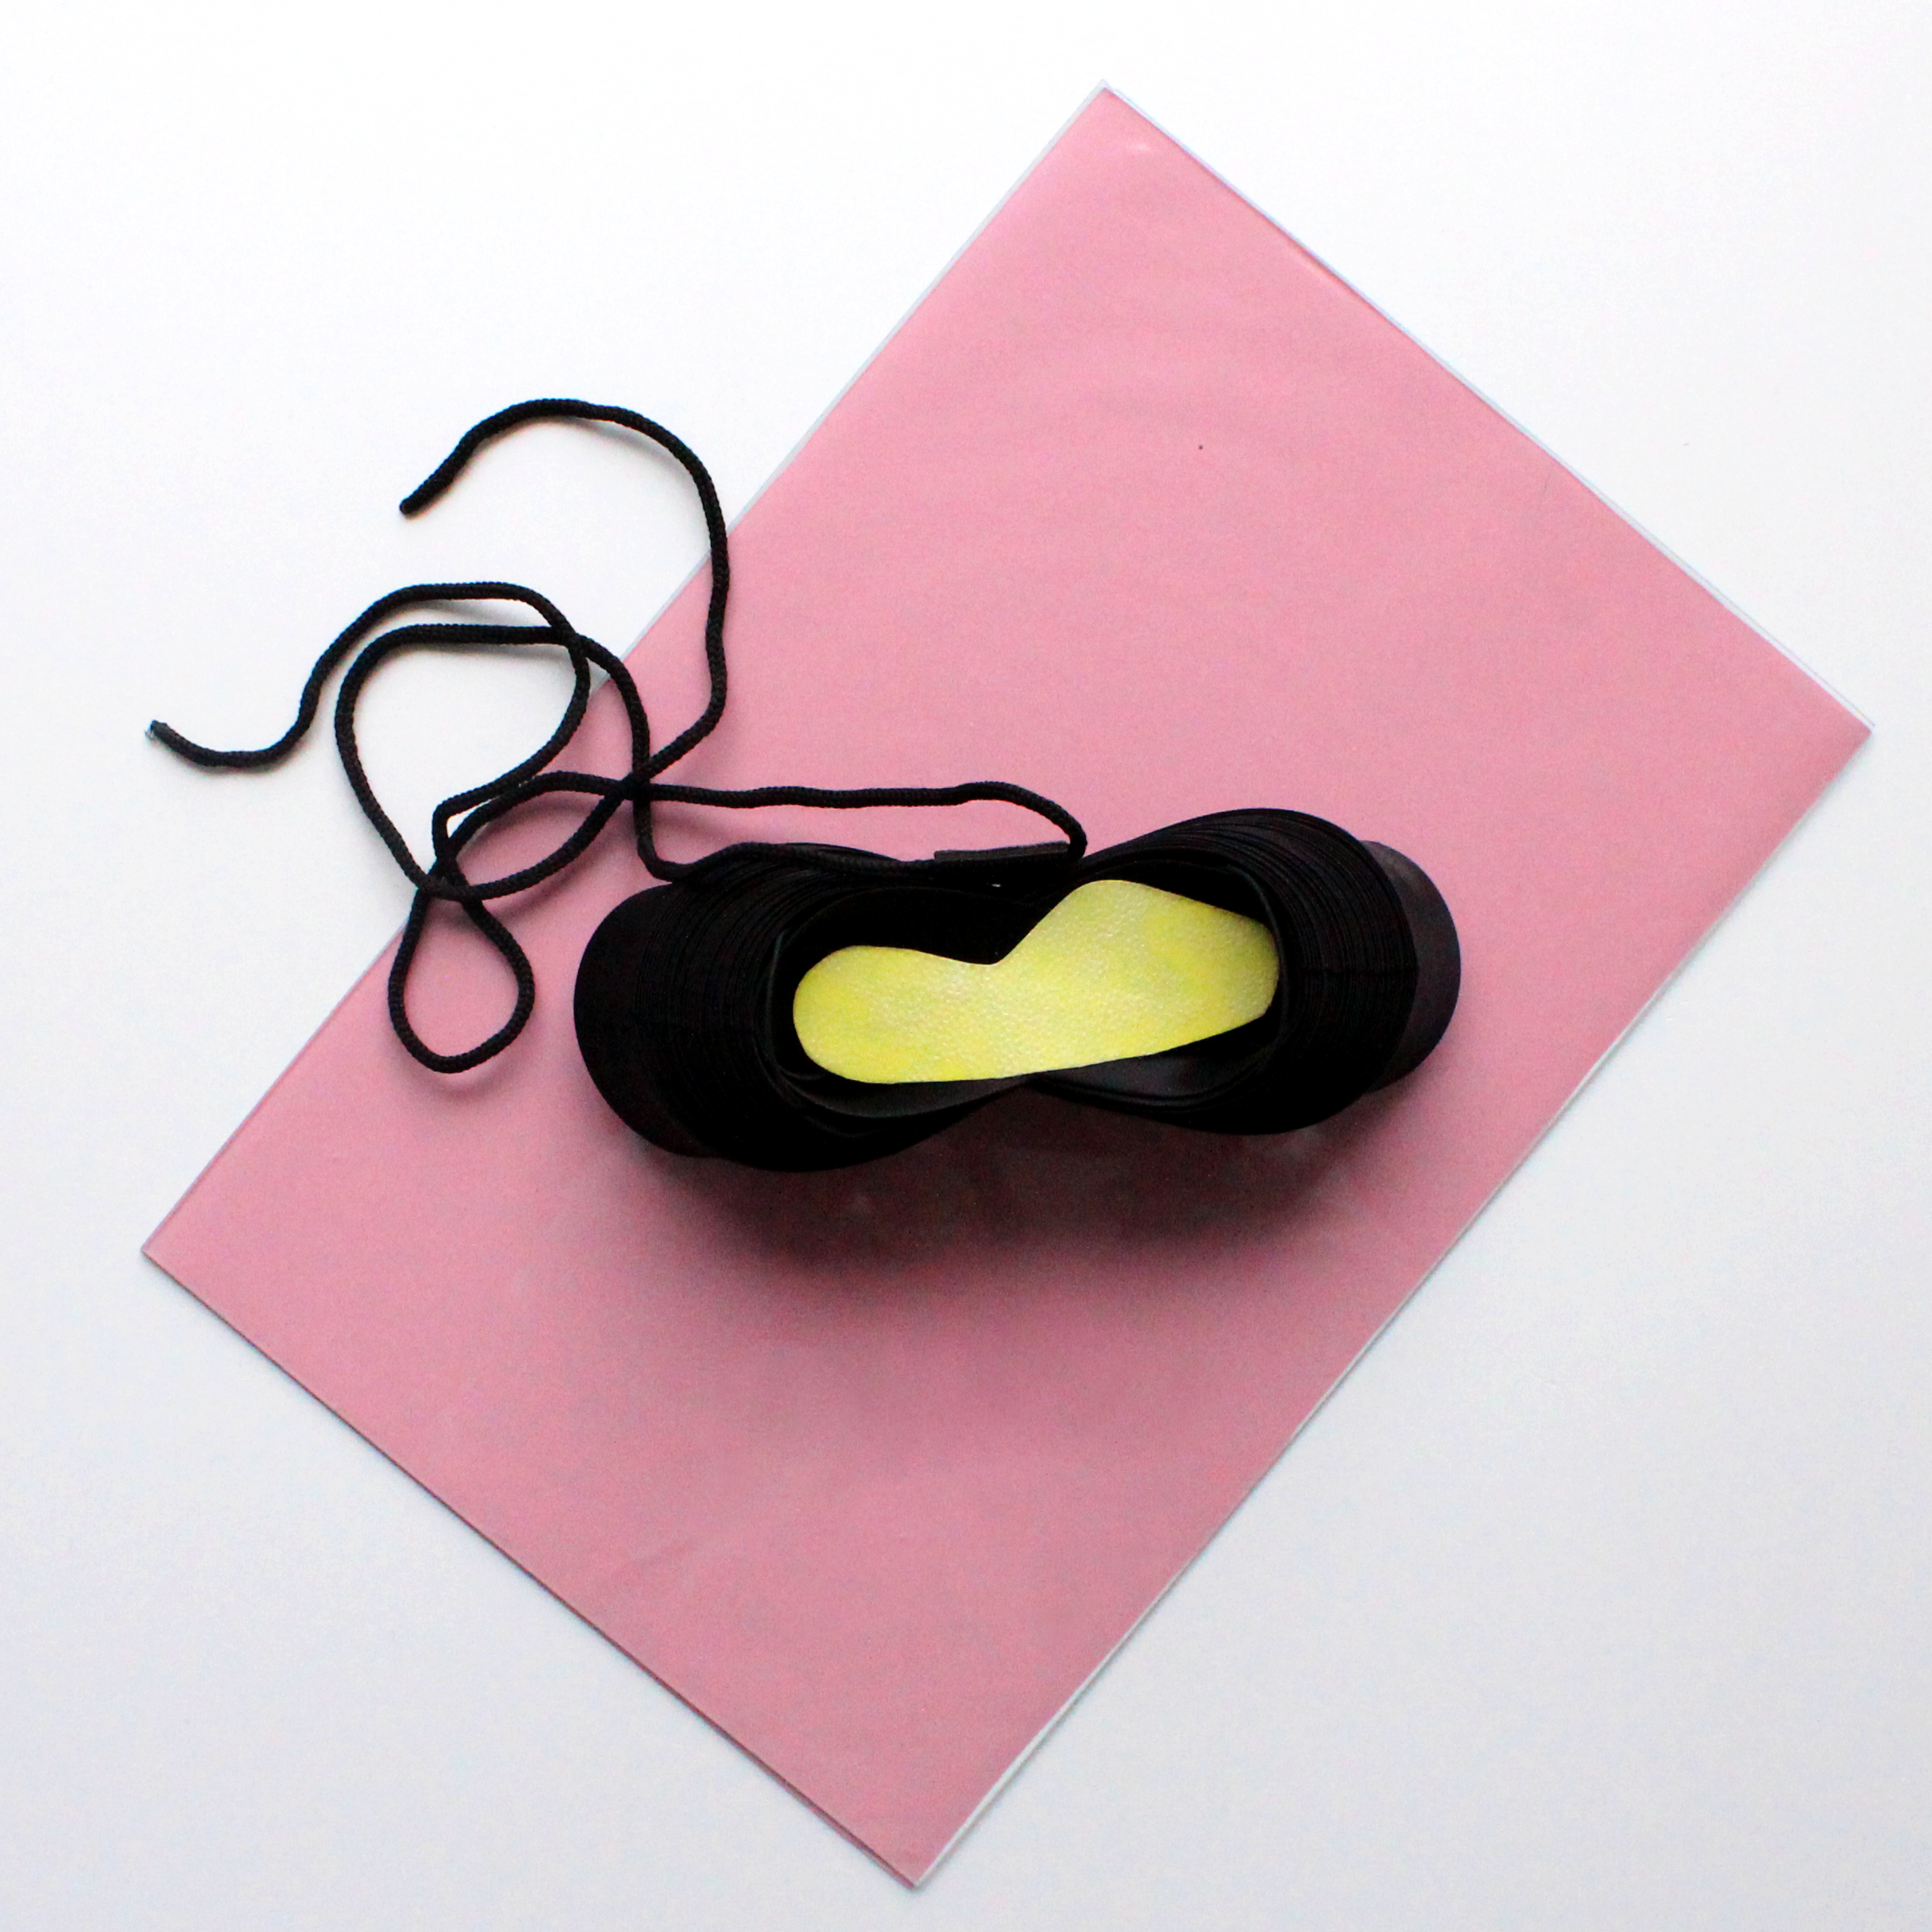 Ein schwrazer Schuh auf einem pinken Untergrund